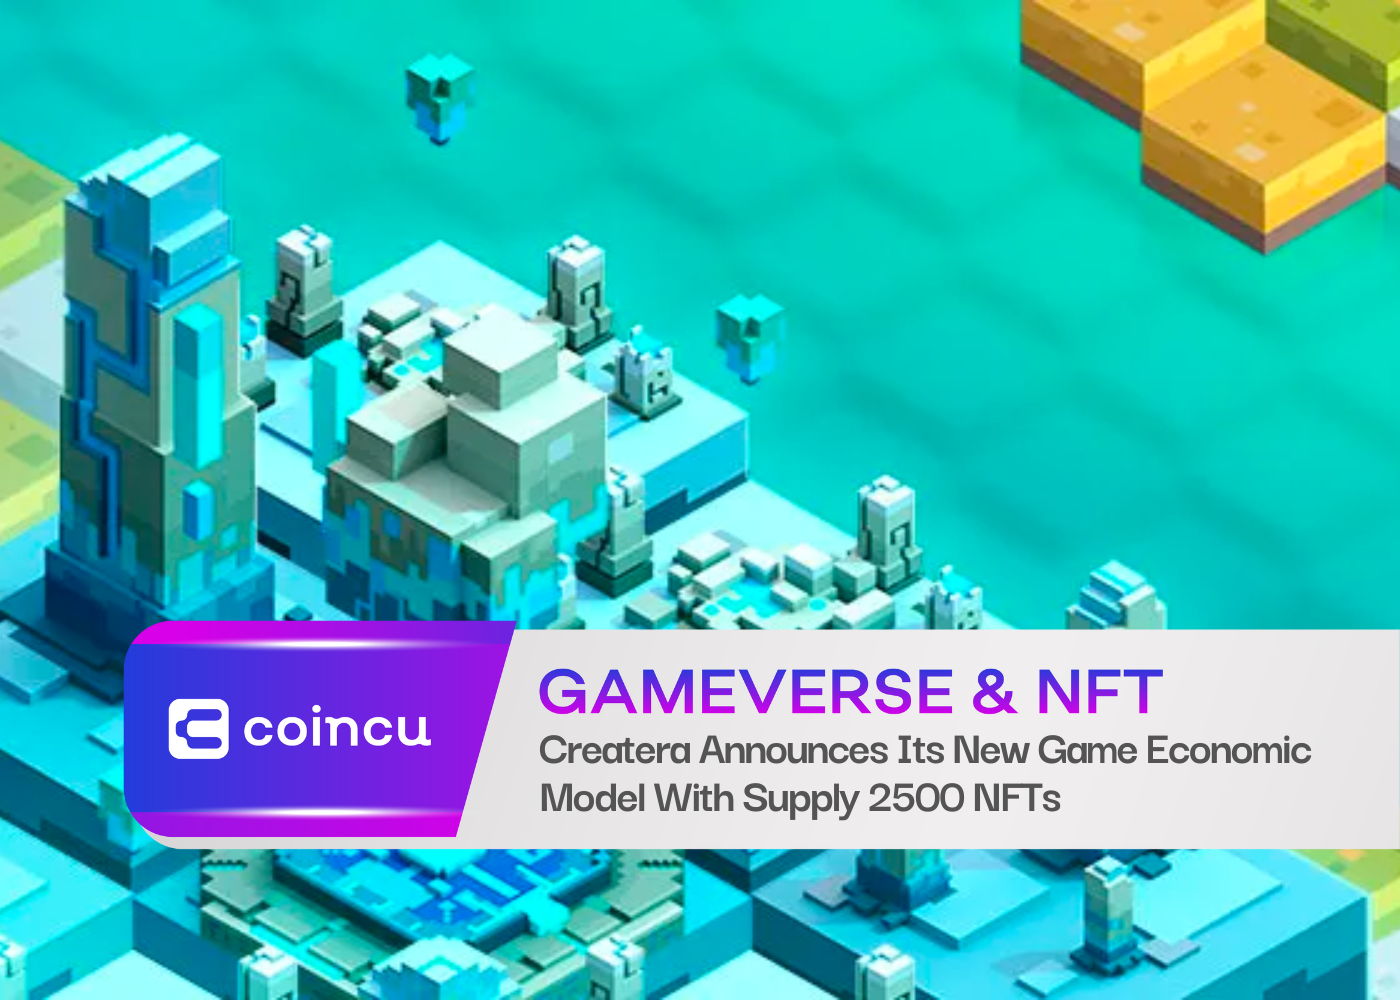 Createra 宣布推出新游戏经济模型，供应 2500 个 NFT